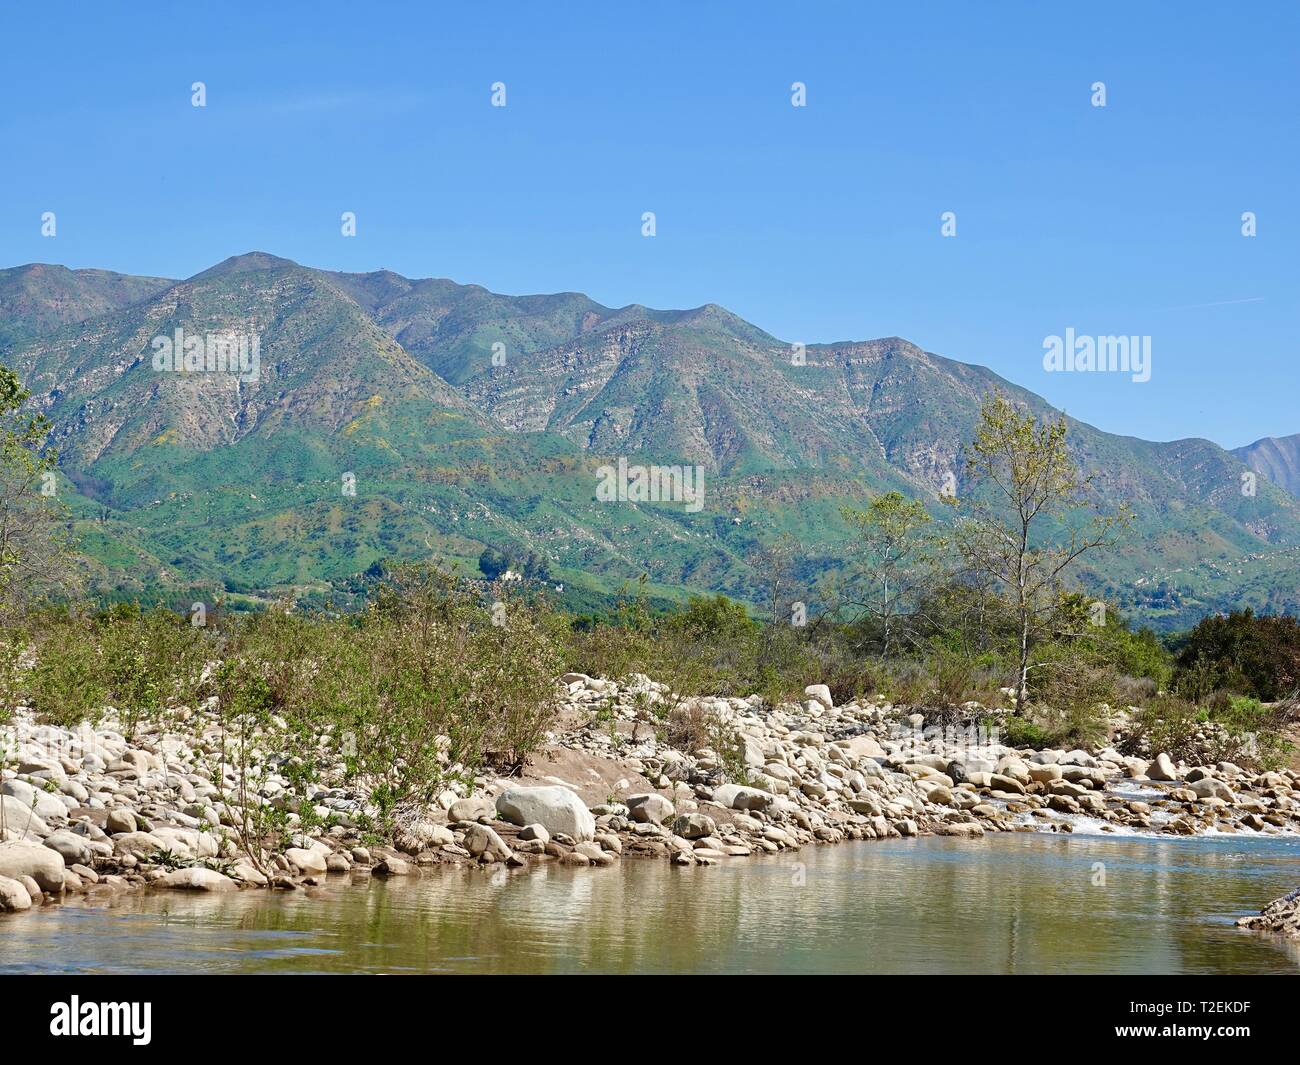 Paesaggio guardando attraverso il Fiume Ventura verso le montagne Topatopa, Ojai, CALIFORNIA, STATI UNITI D'AMERICA Foto Stock